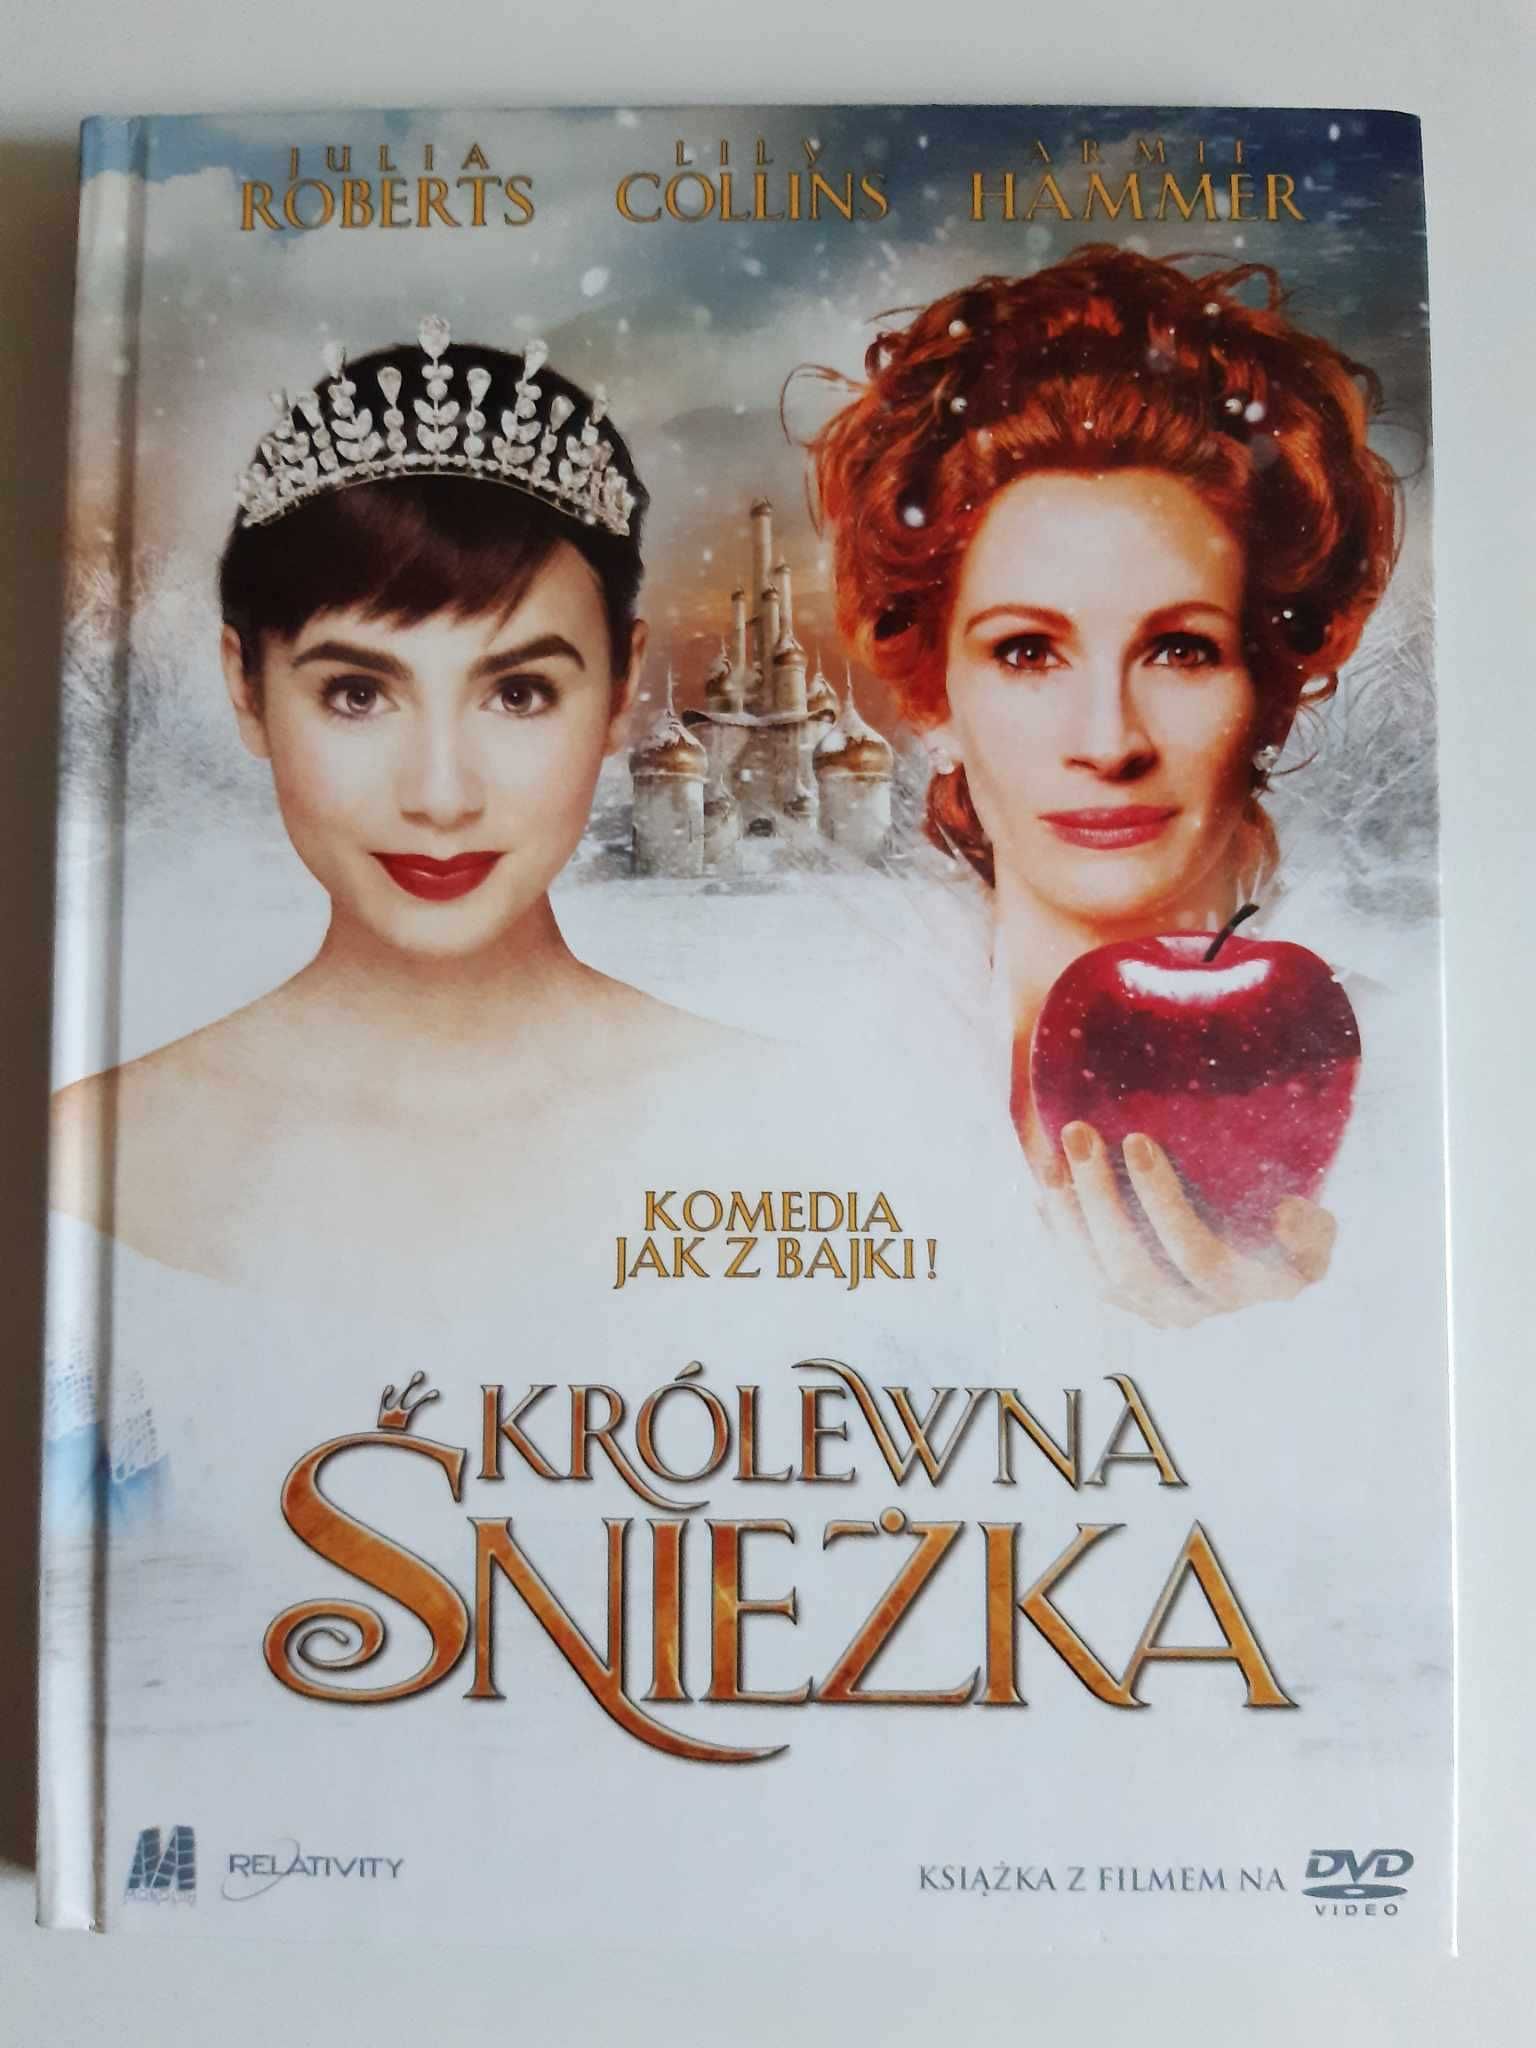 Film dvd Królewna Śnieżka, Julia Roberts, polski dubbing